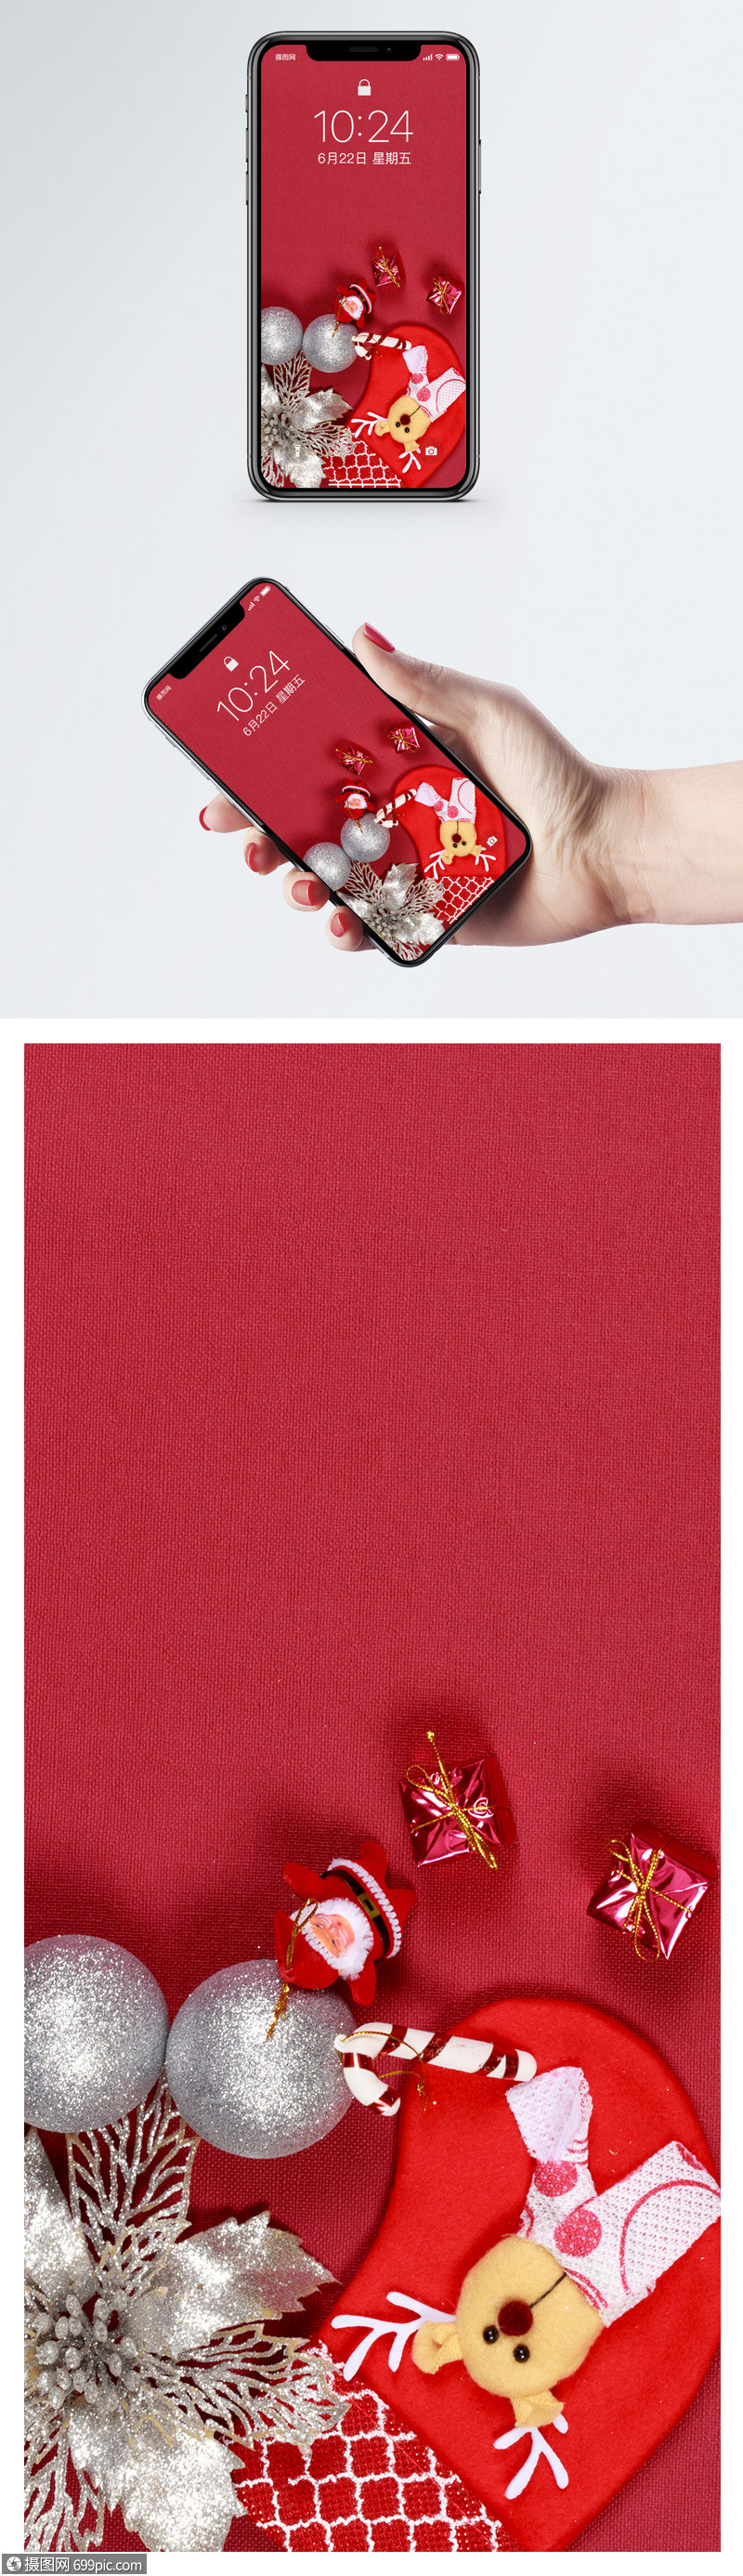 圣诞装饰手机壁纸红色壁纸手机屏保